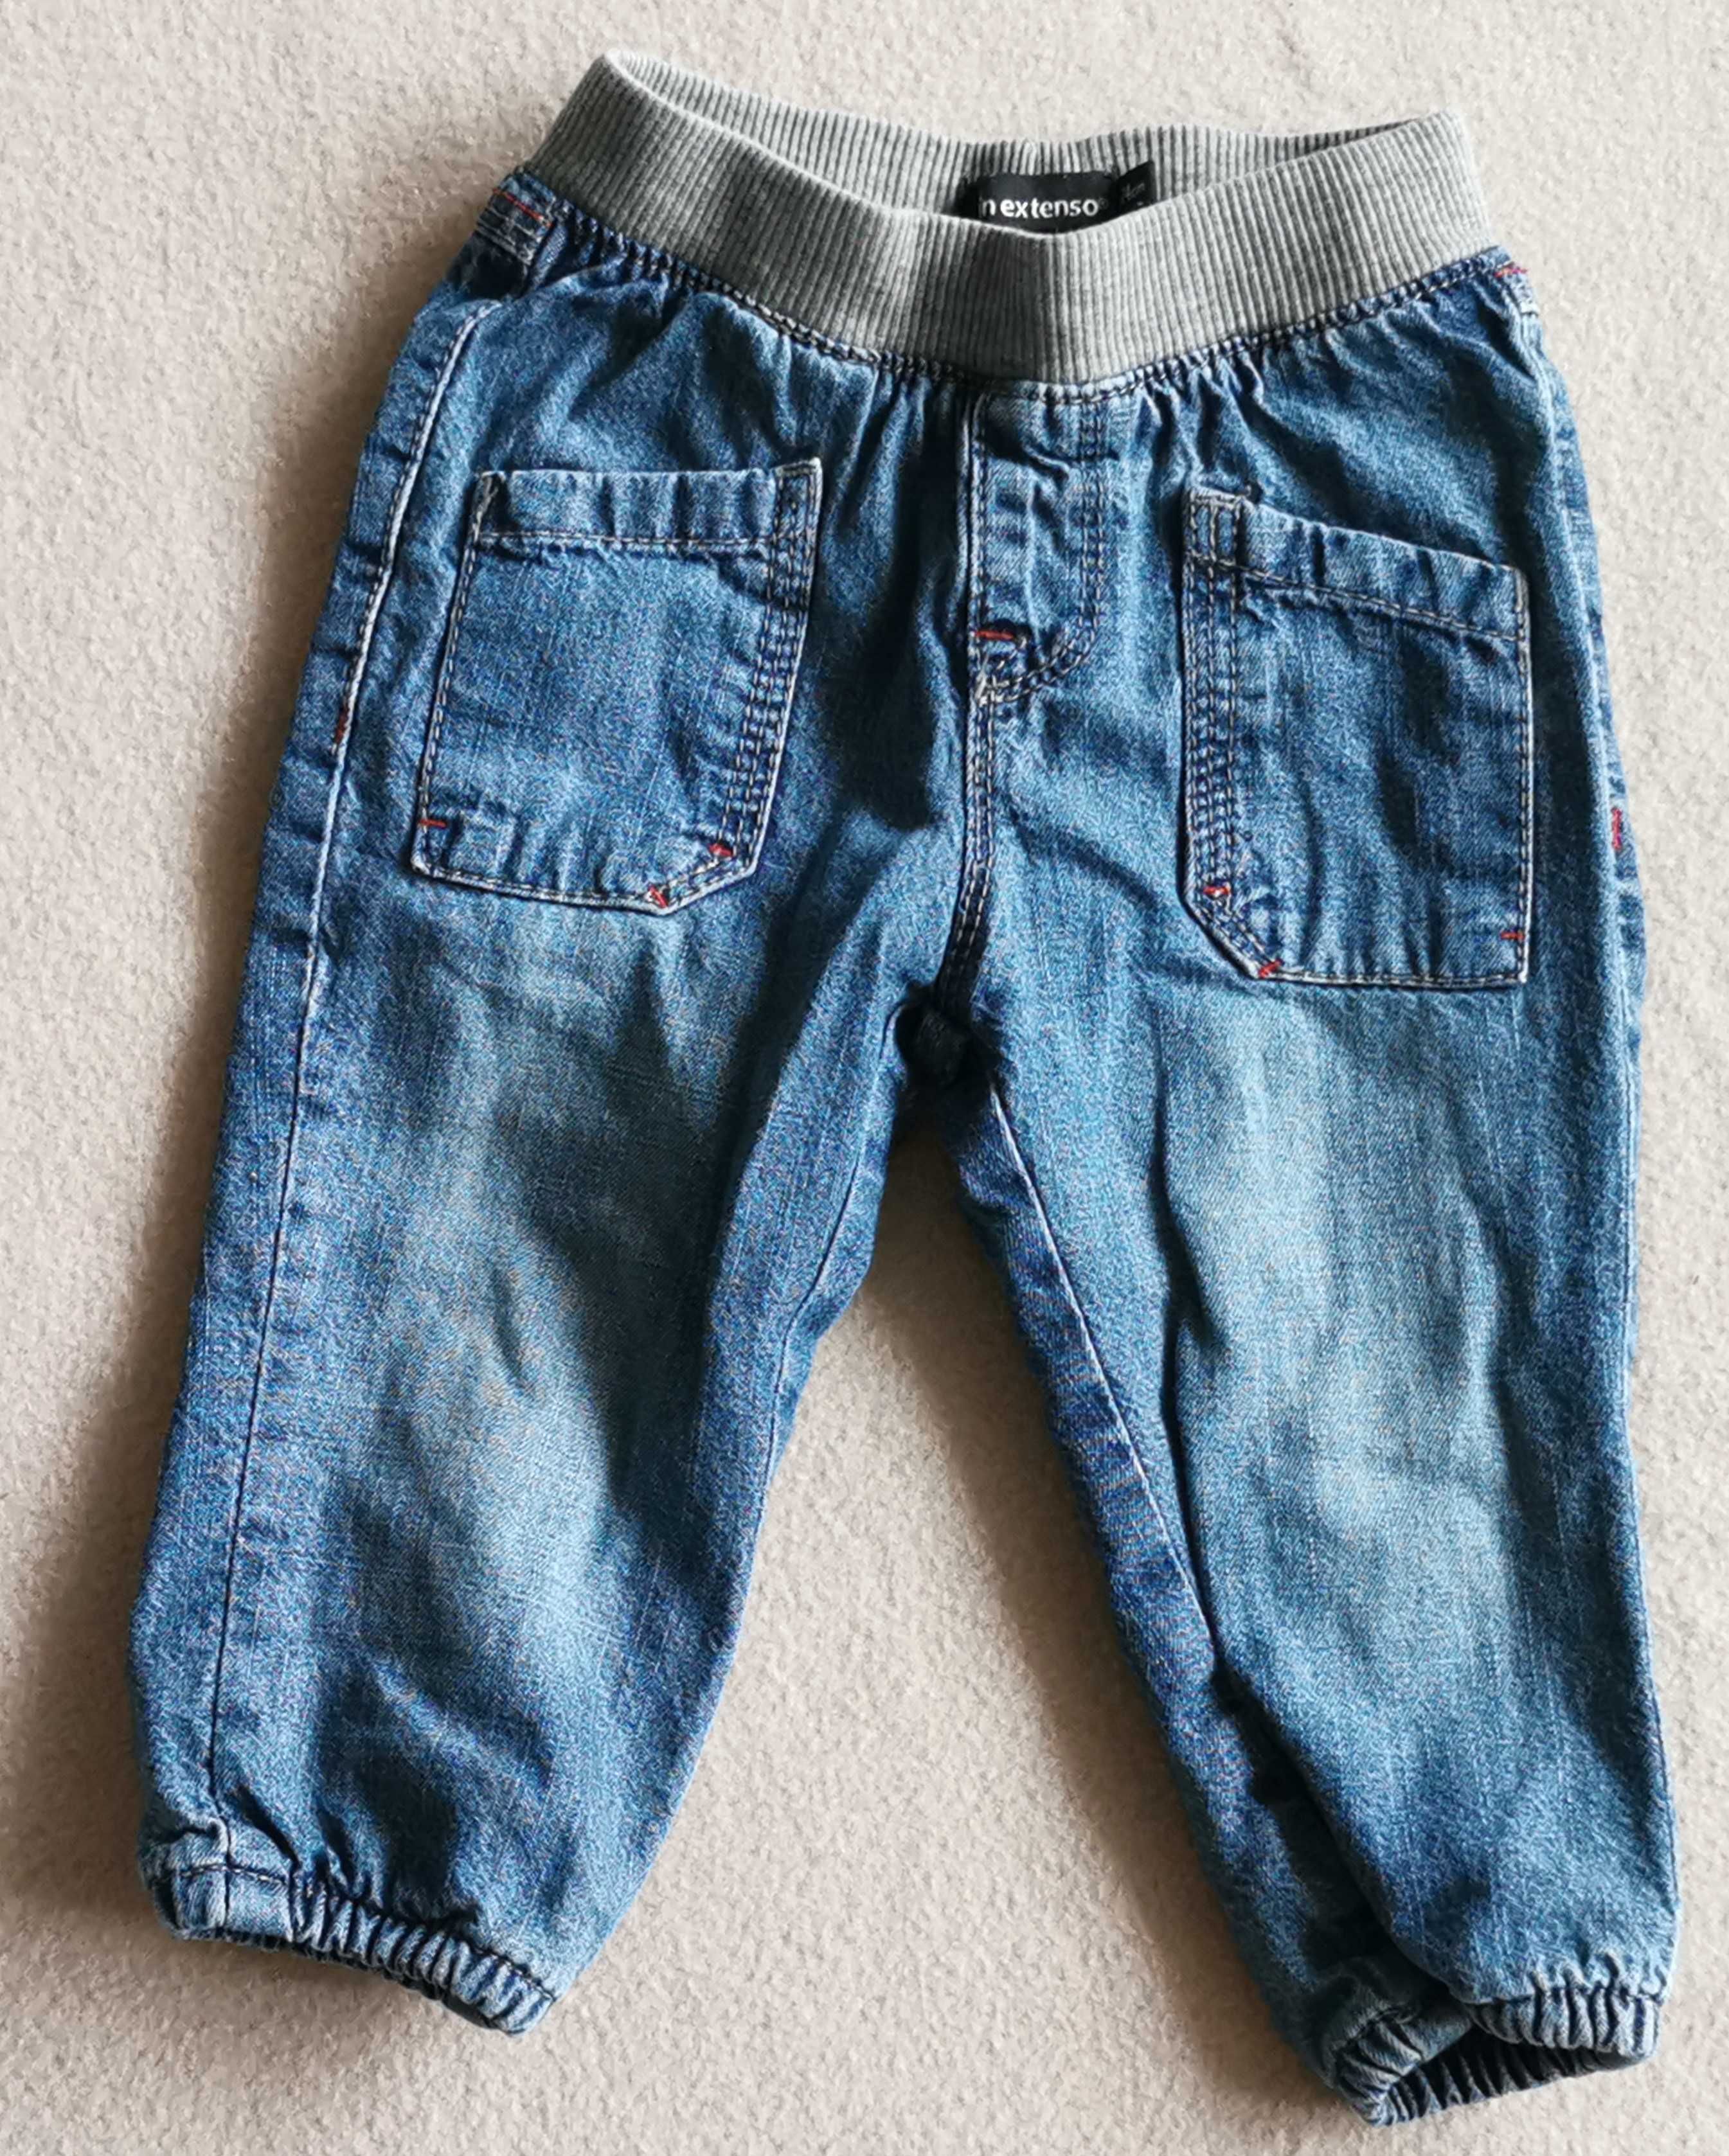 Ciepłe spodnie z podszewką IN EXTENSO, rozmiar 74, jeansy